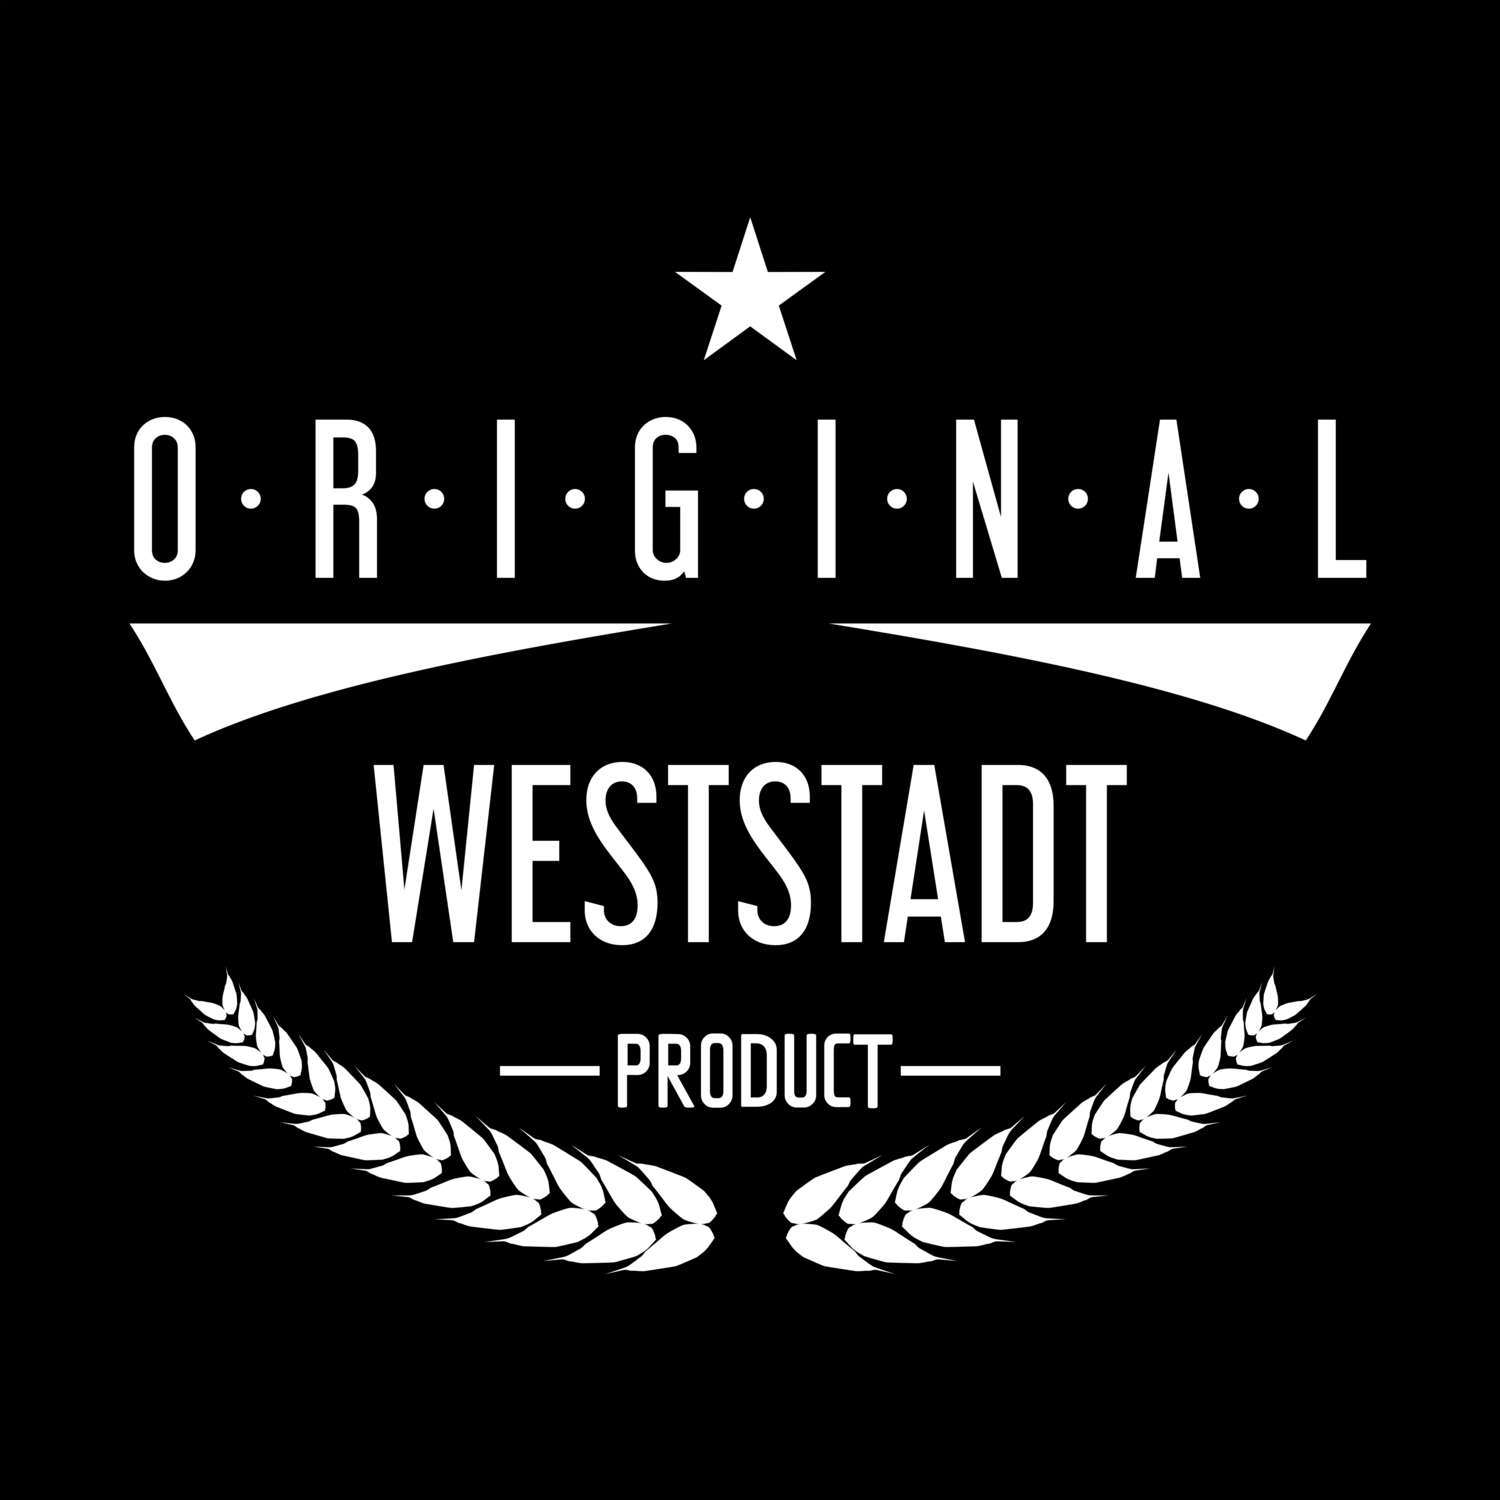 Weststadt T-Shirt »Original Product«